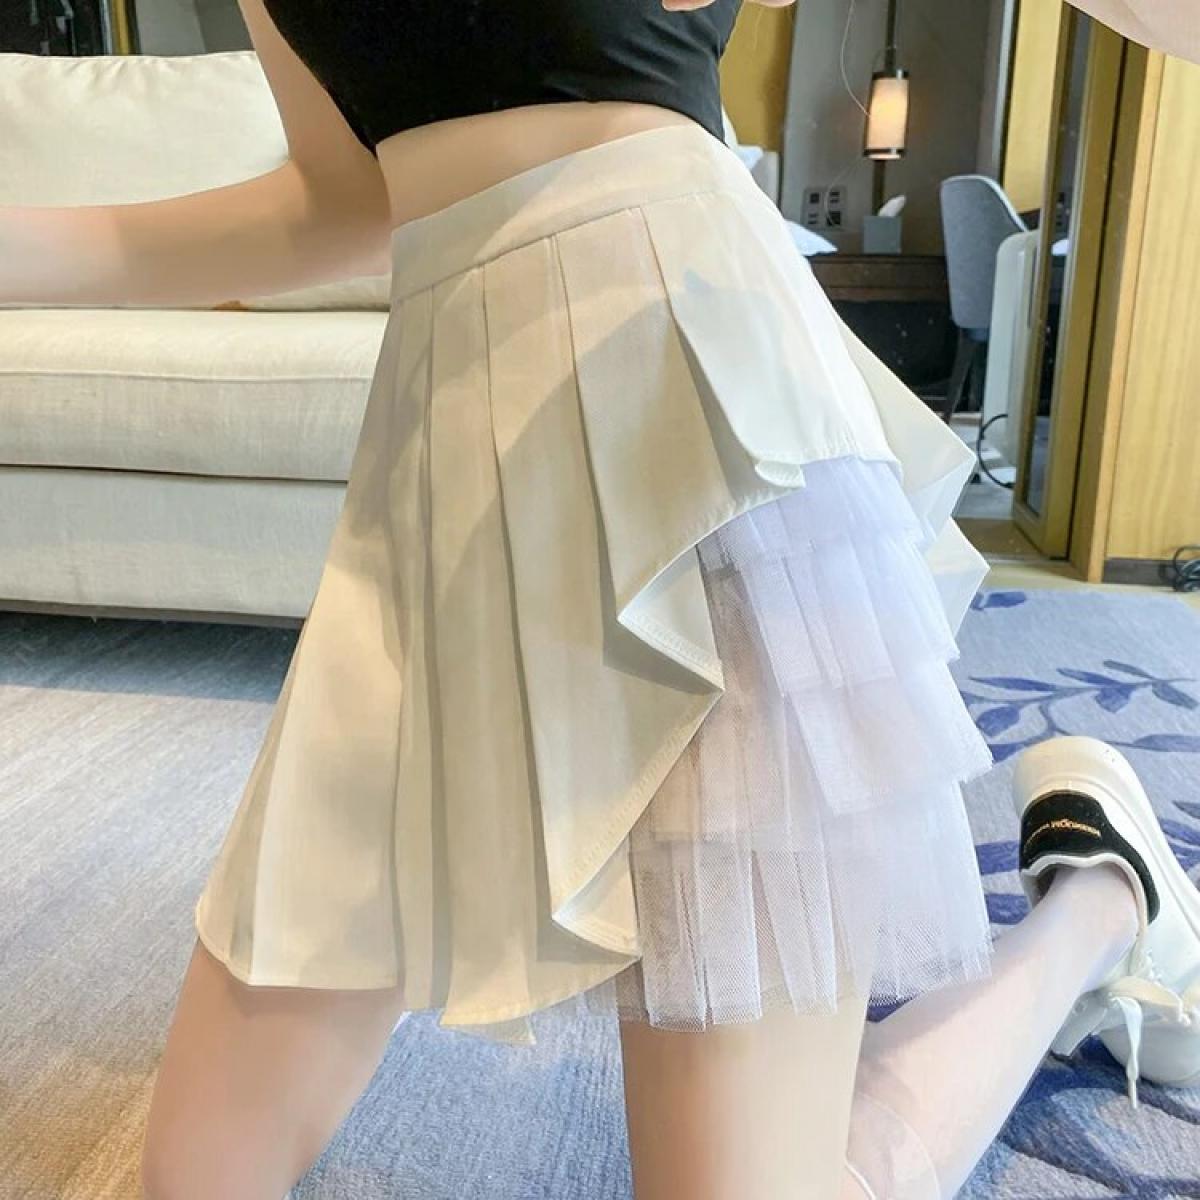  Black White High Waist Pleated Skirt Mesh Bodycon Y2k Faldas Mujer Moda Casual Ruffle Jupe Women's  Tulle Skirt Femme